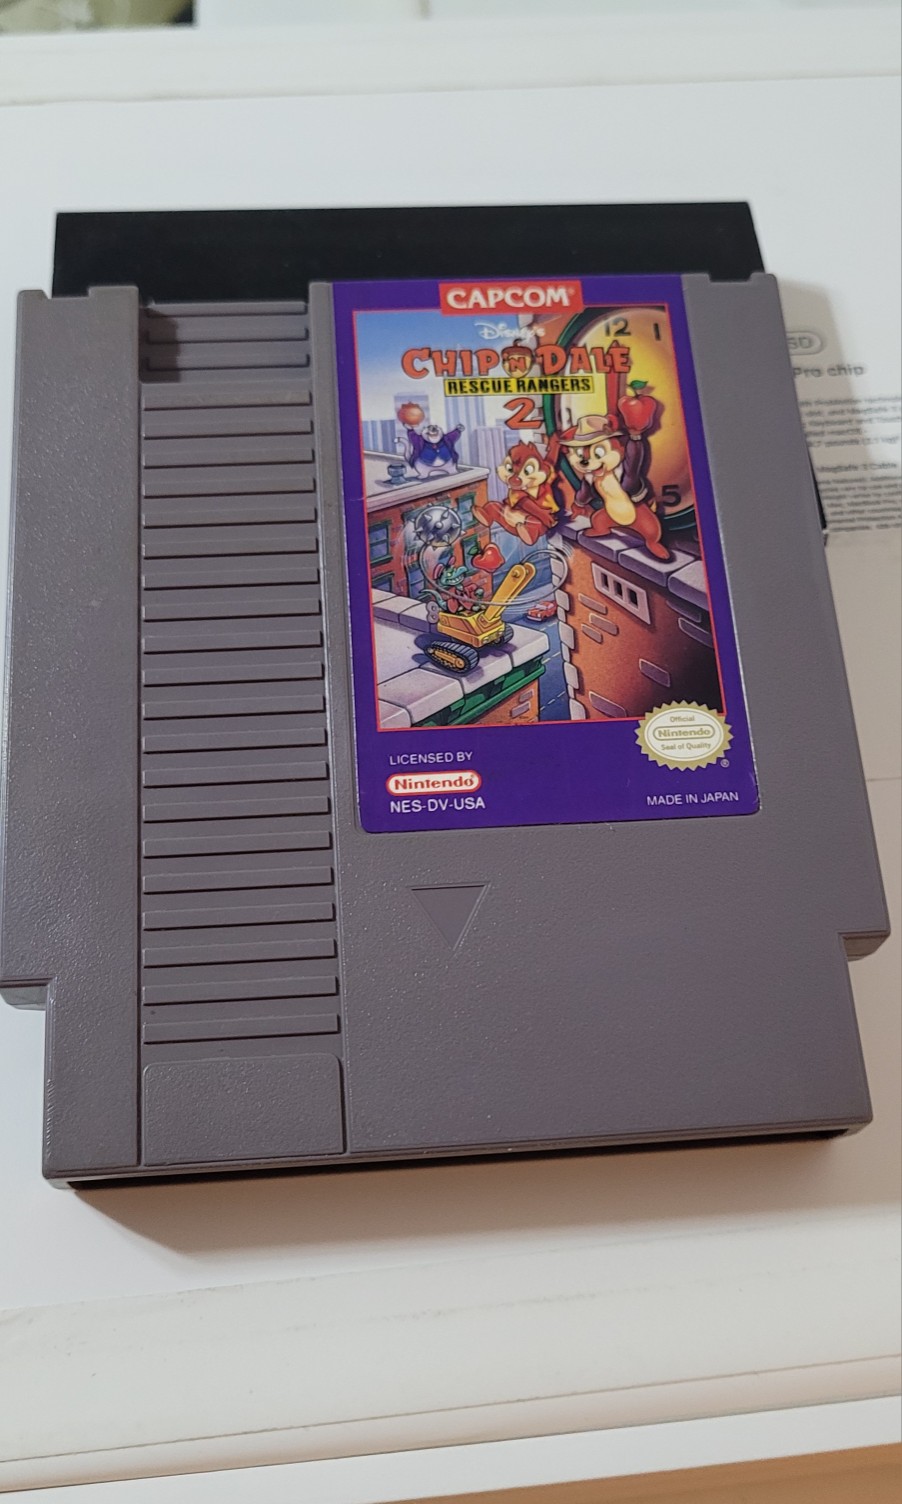 consolas y videojuegos - Nintendo Nes Chip N Dale 2 Original 0